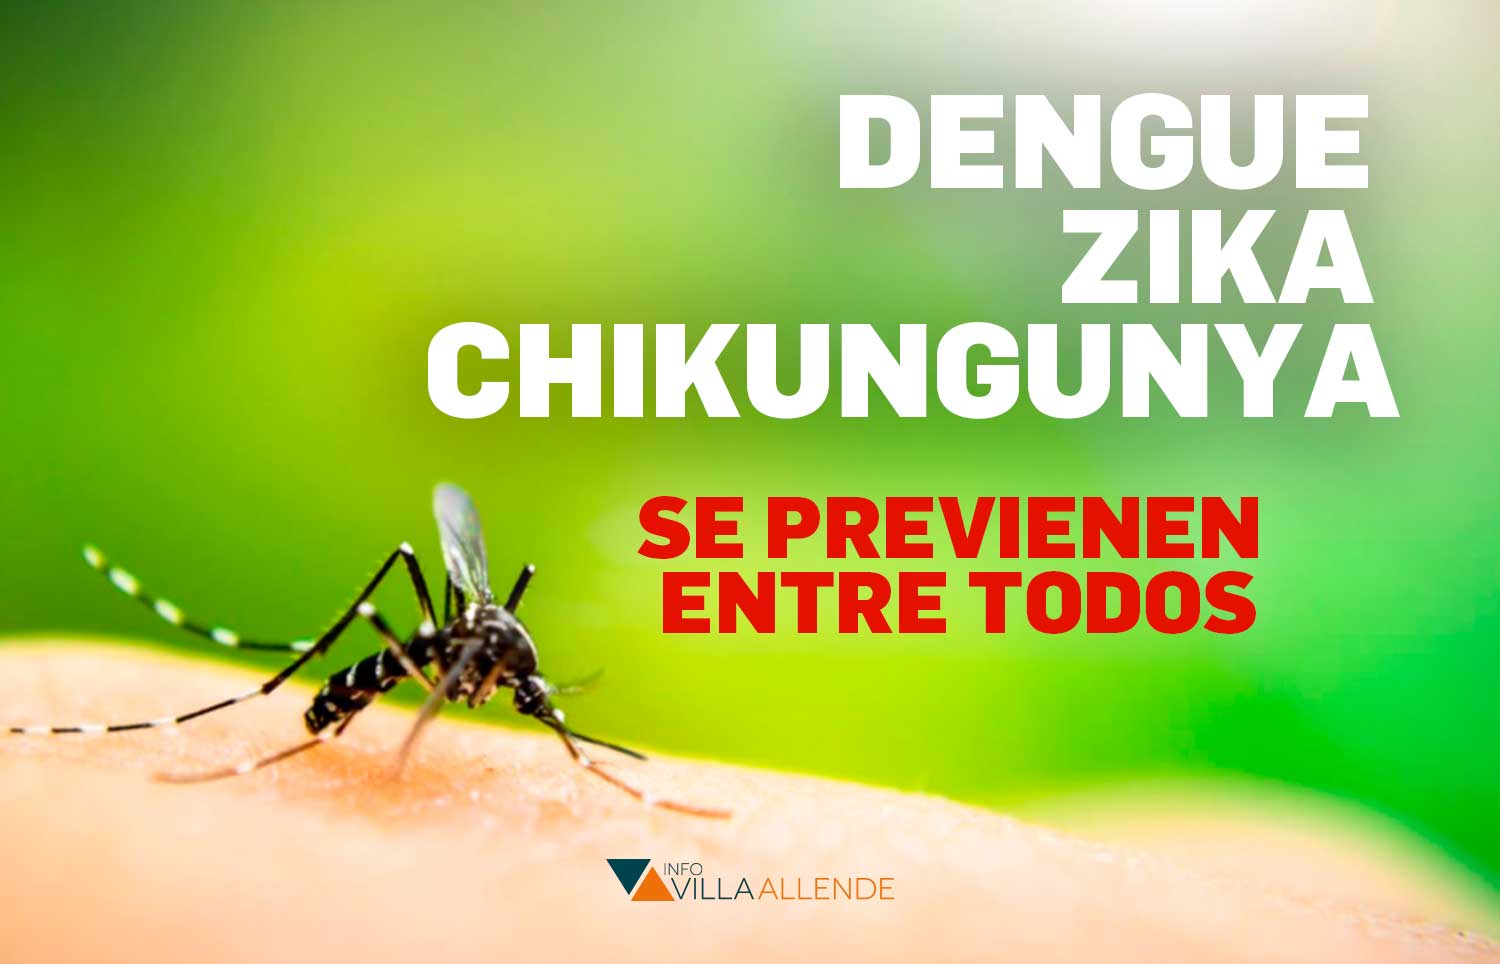 Continúan en aumento los casos de dengue en la provincia